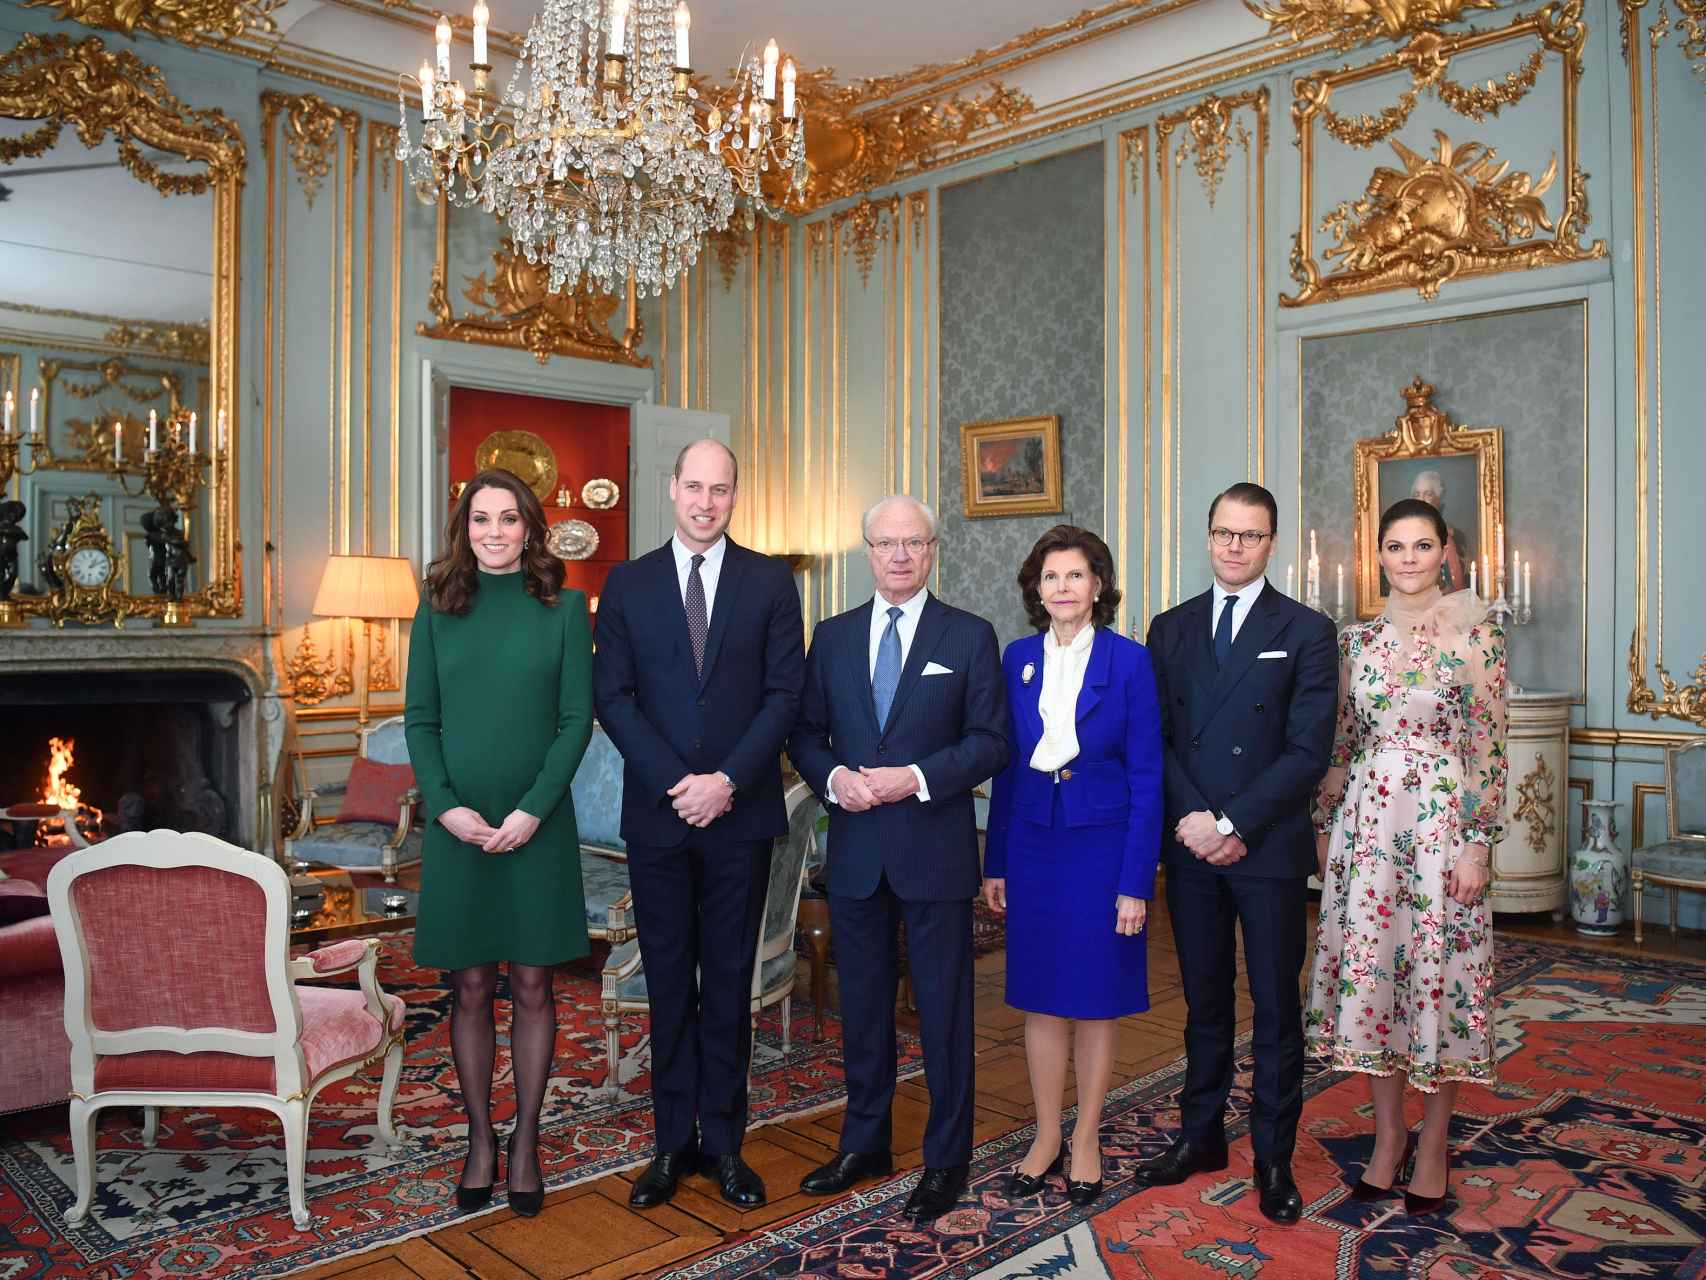 Los duques de Cambridge posa junto a los reyes Suecia. Gtres.